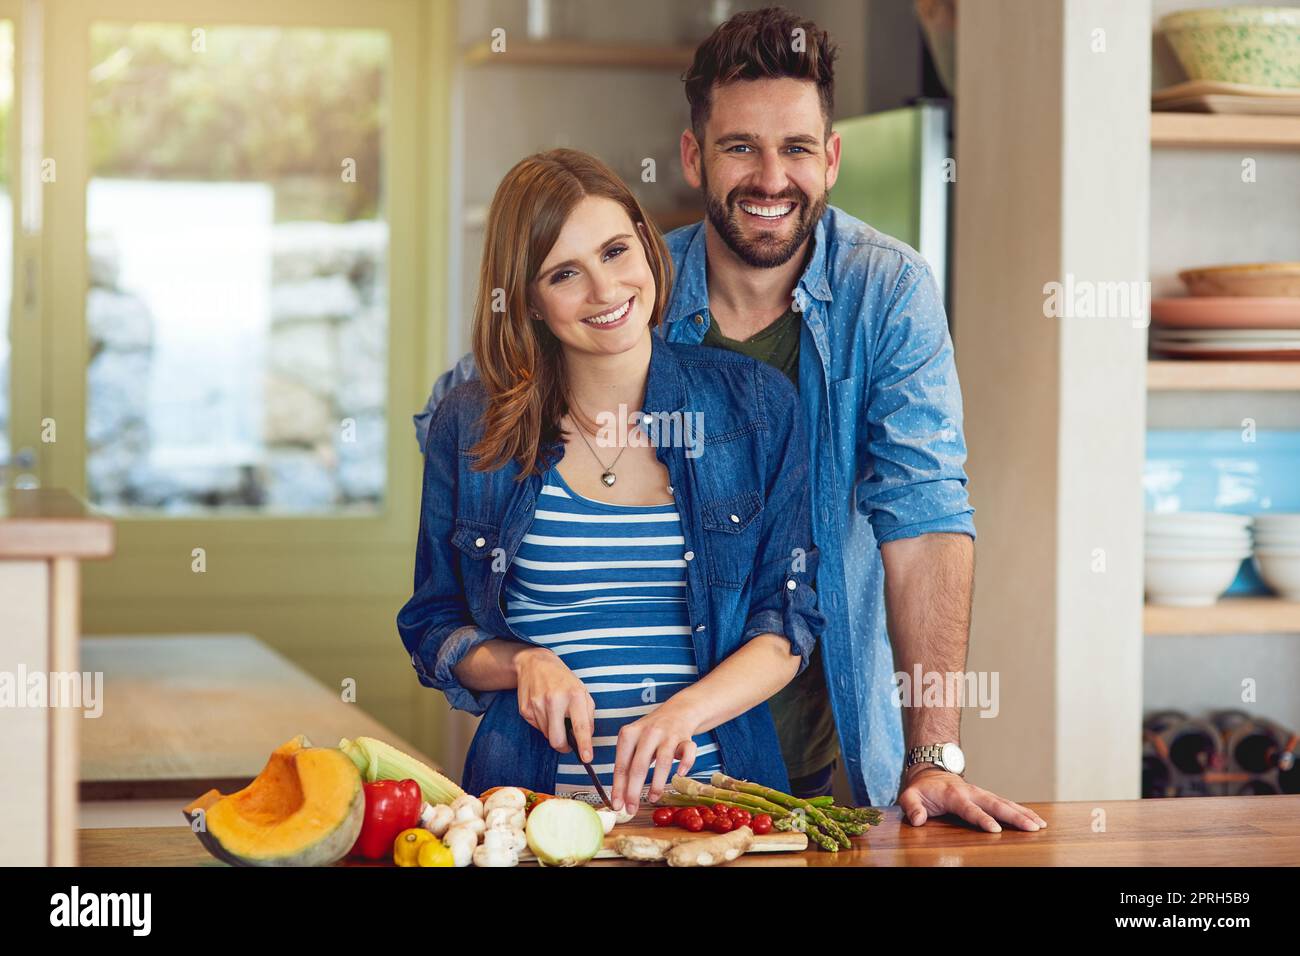 Herzgesundes Kochen für zwei Personen. Porträt eines glücklichen jungen Paares, das zu Hause gemeinsam eine gesunde Mahlzeit zubereitet. Stockfoto